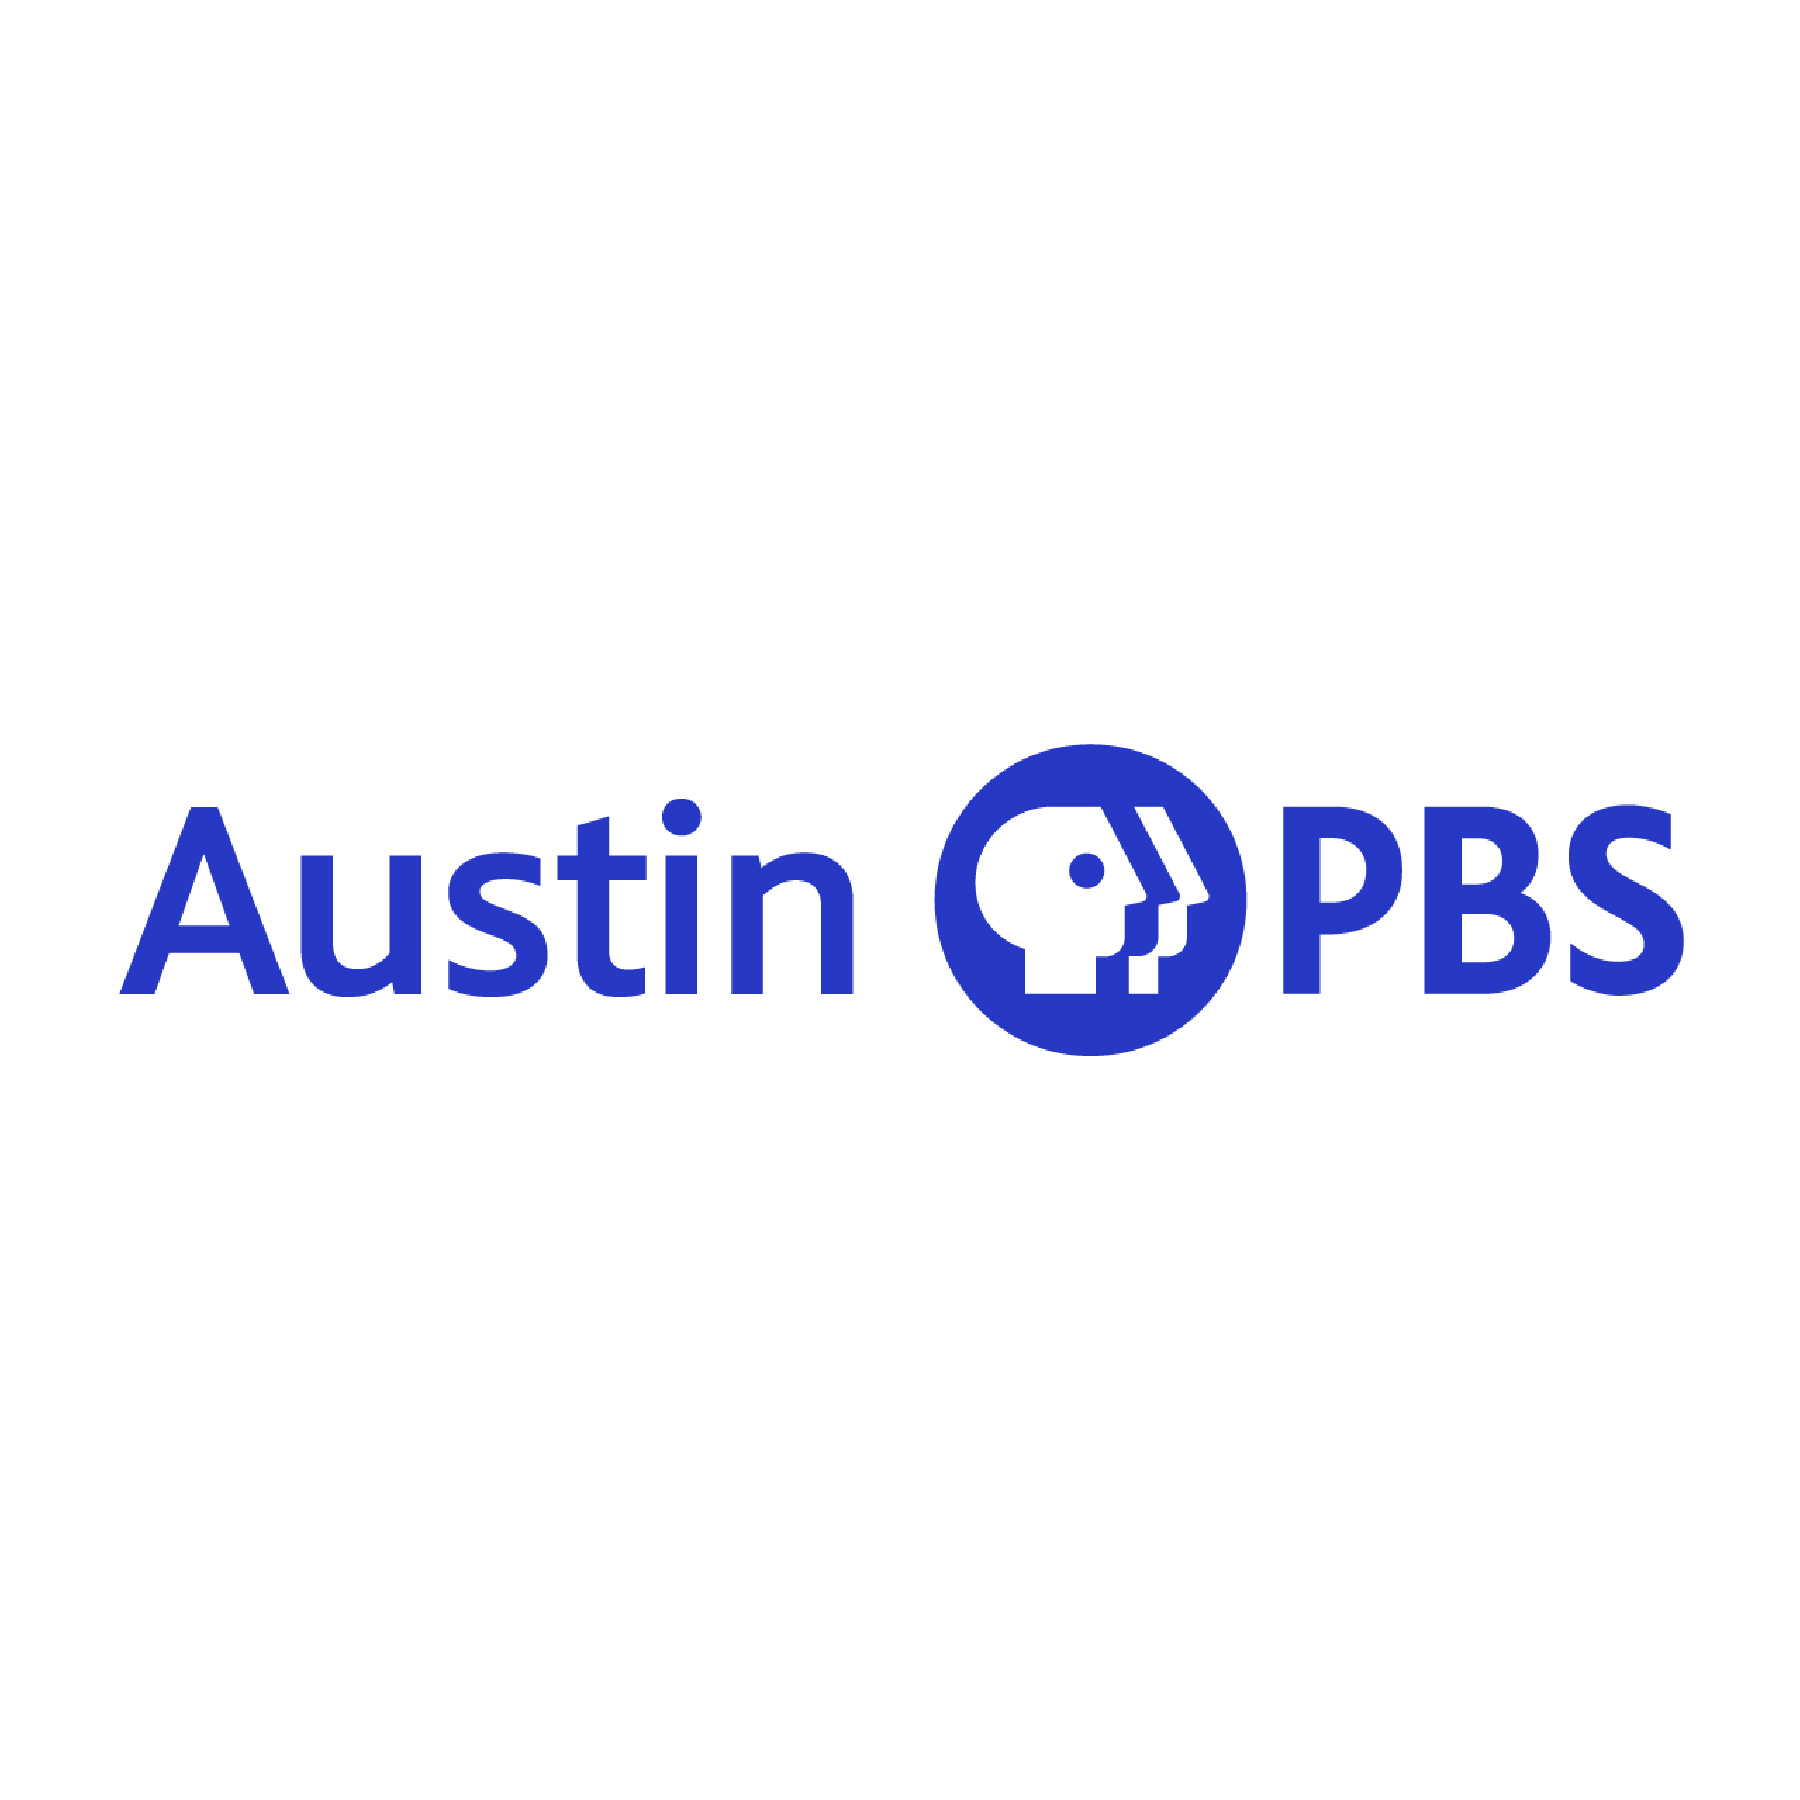 Austin PBS logo